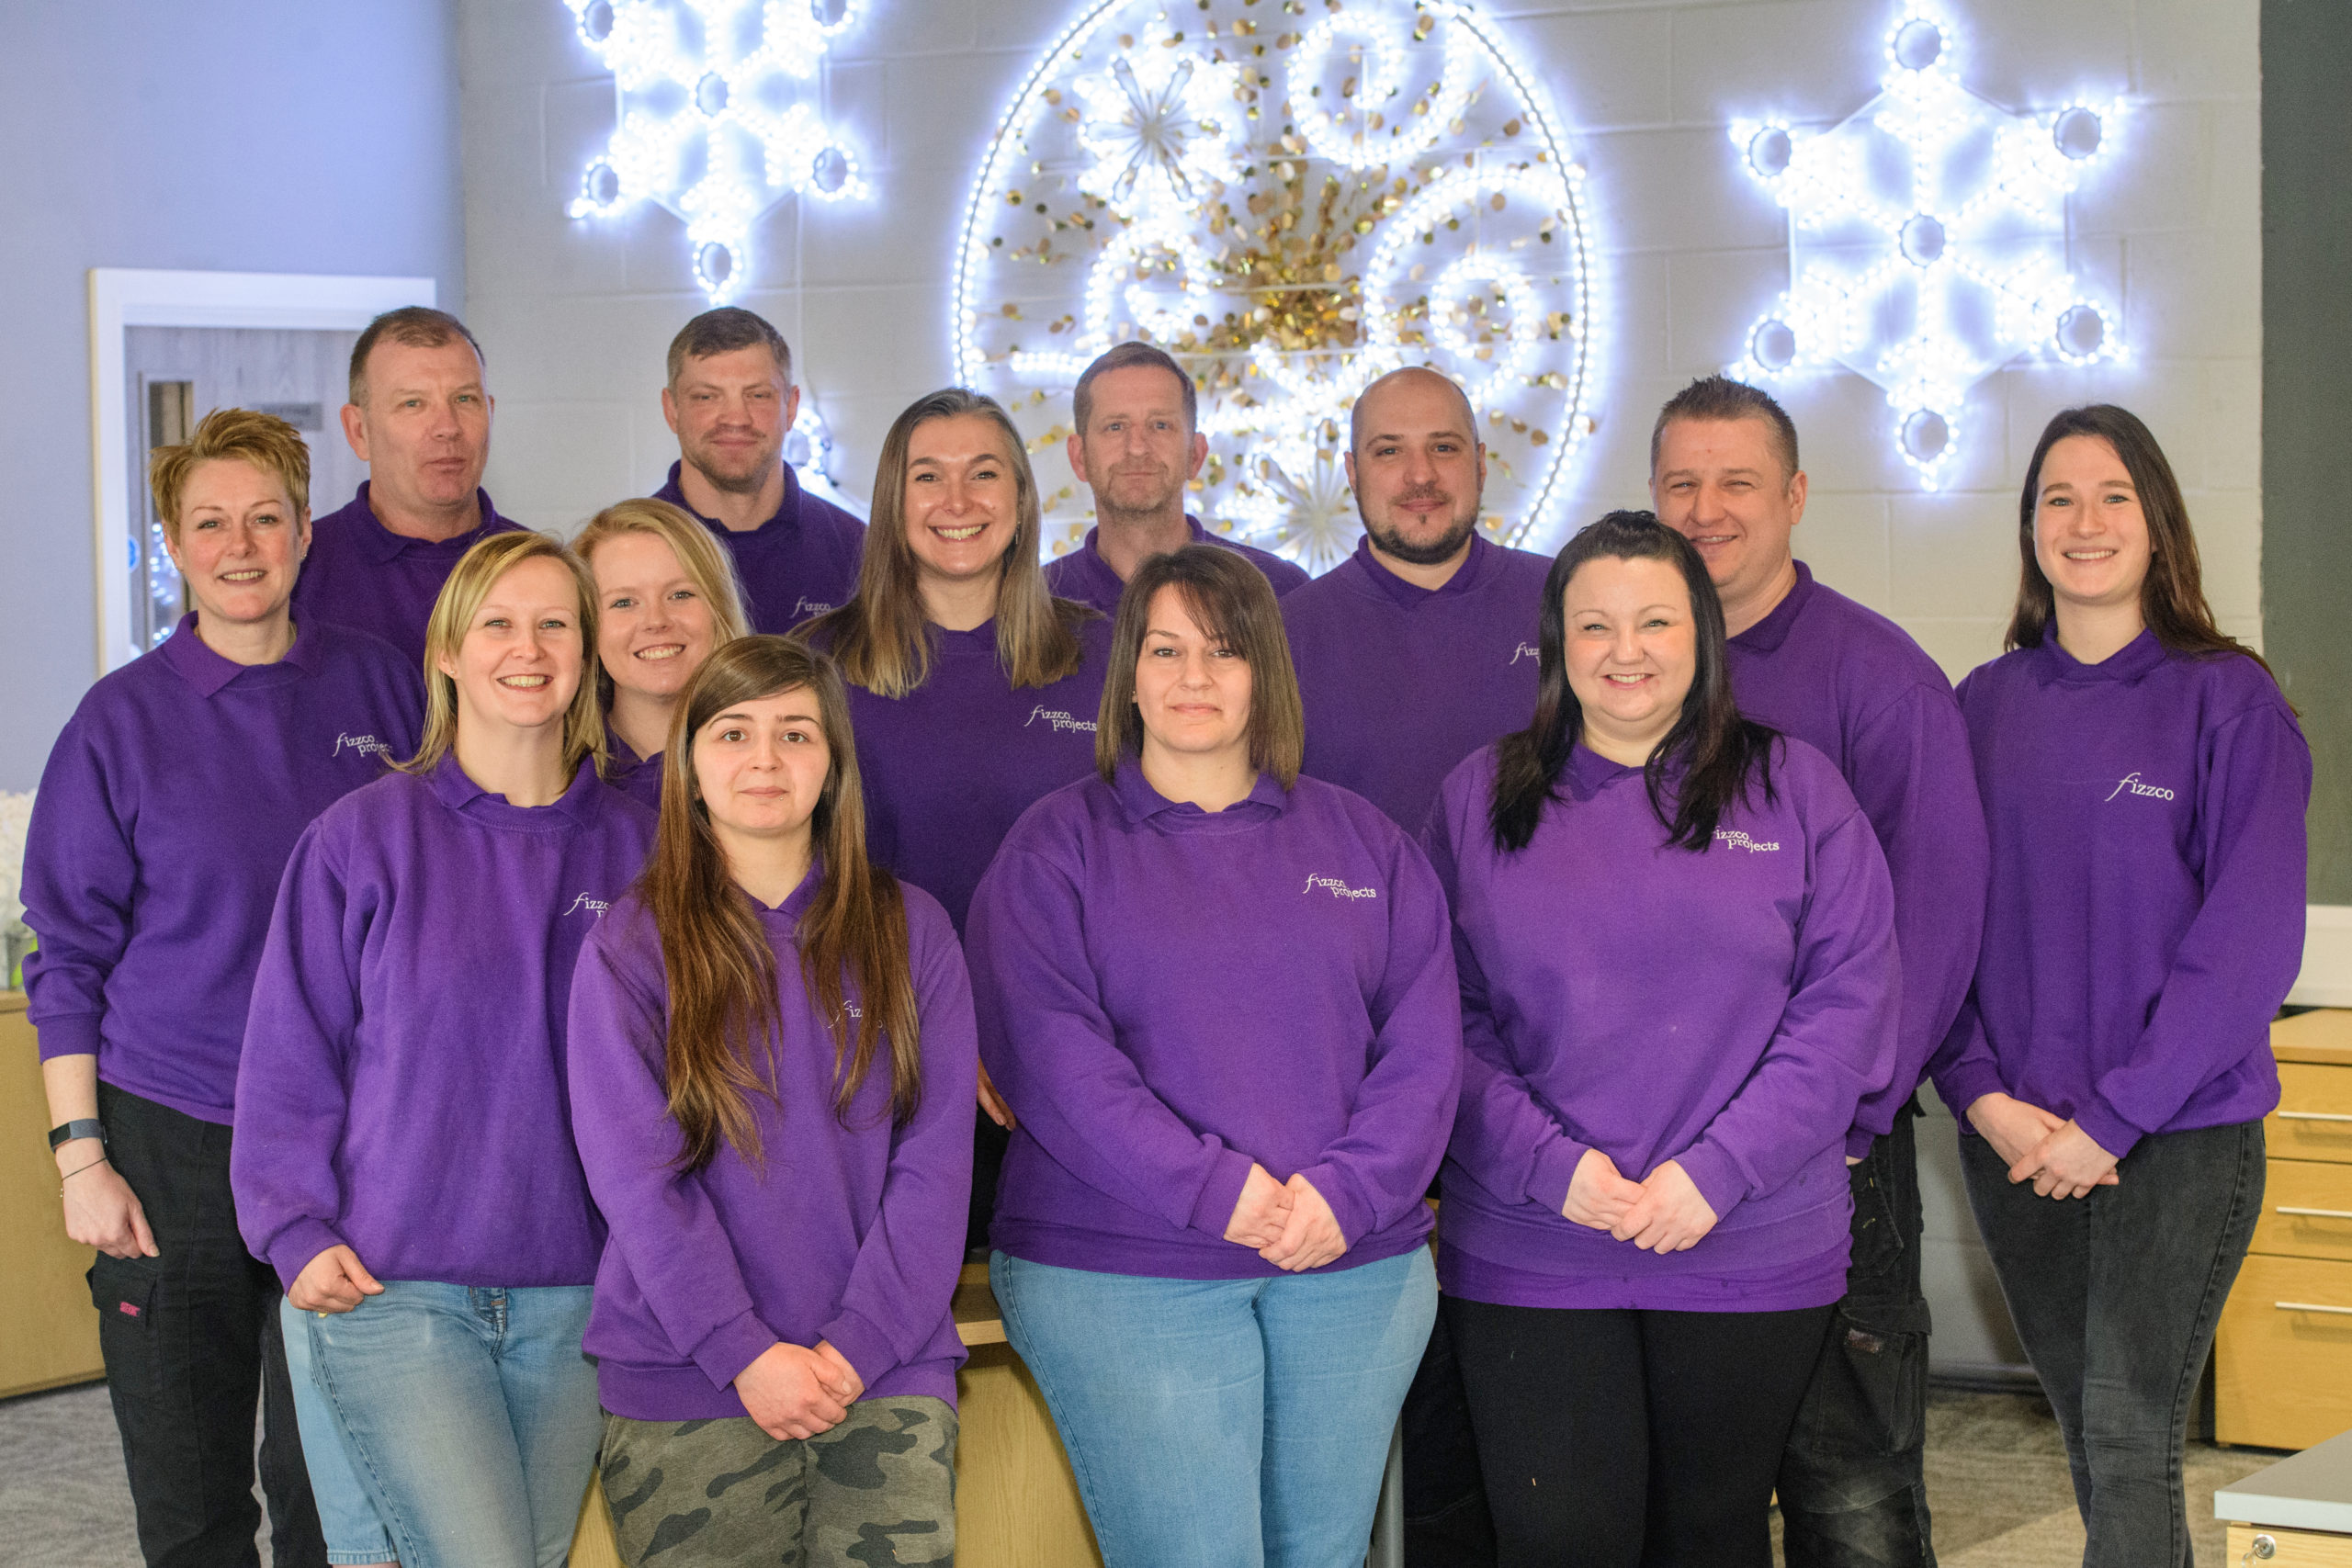 A whole team photo of Fizzco staff members wearing Fizzco's purple uniform in the head office.